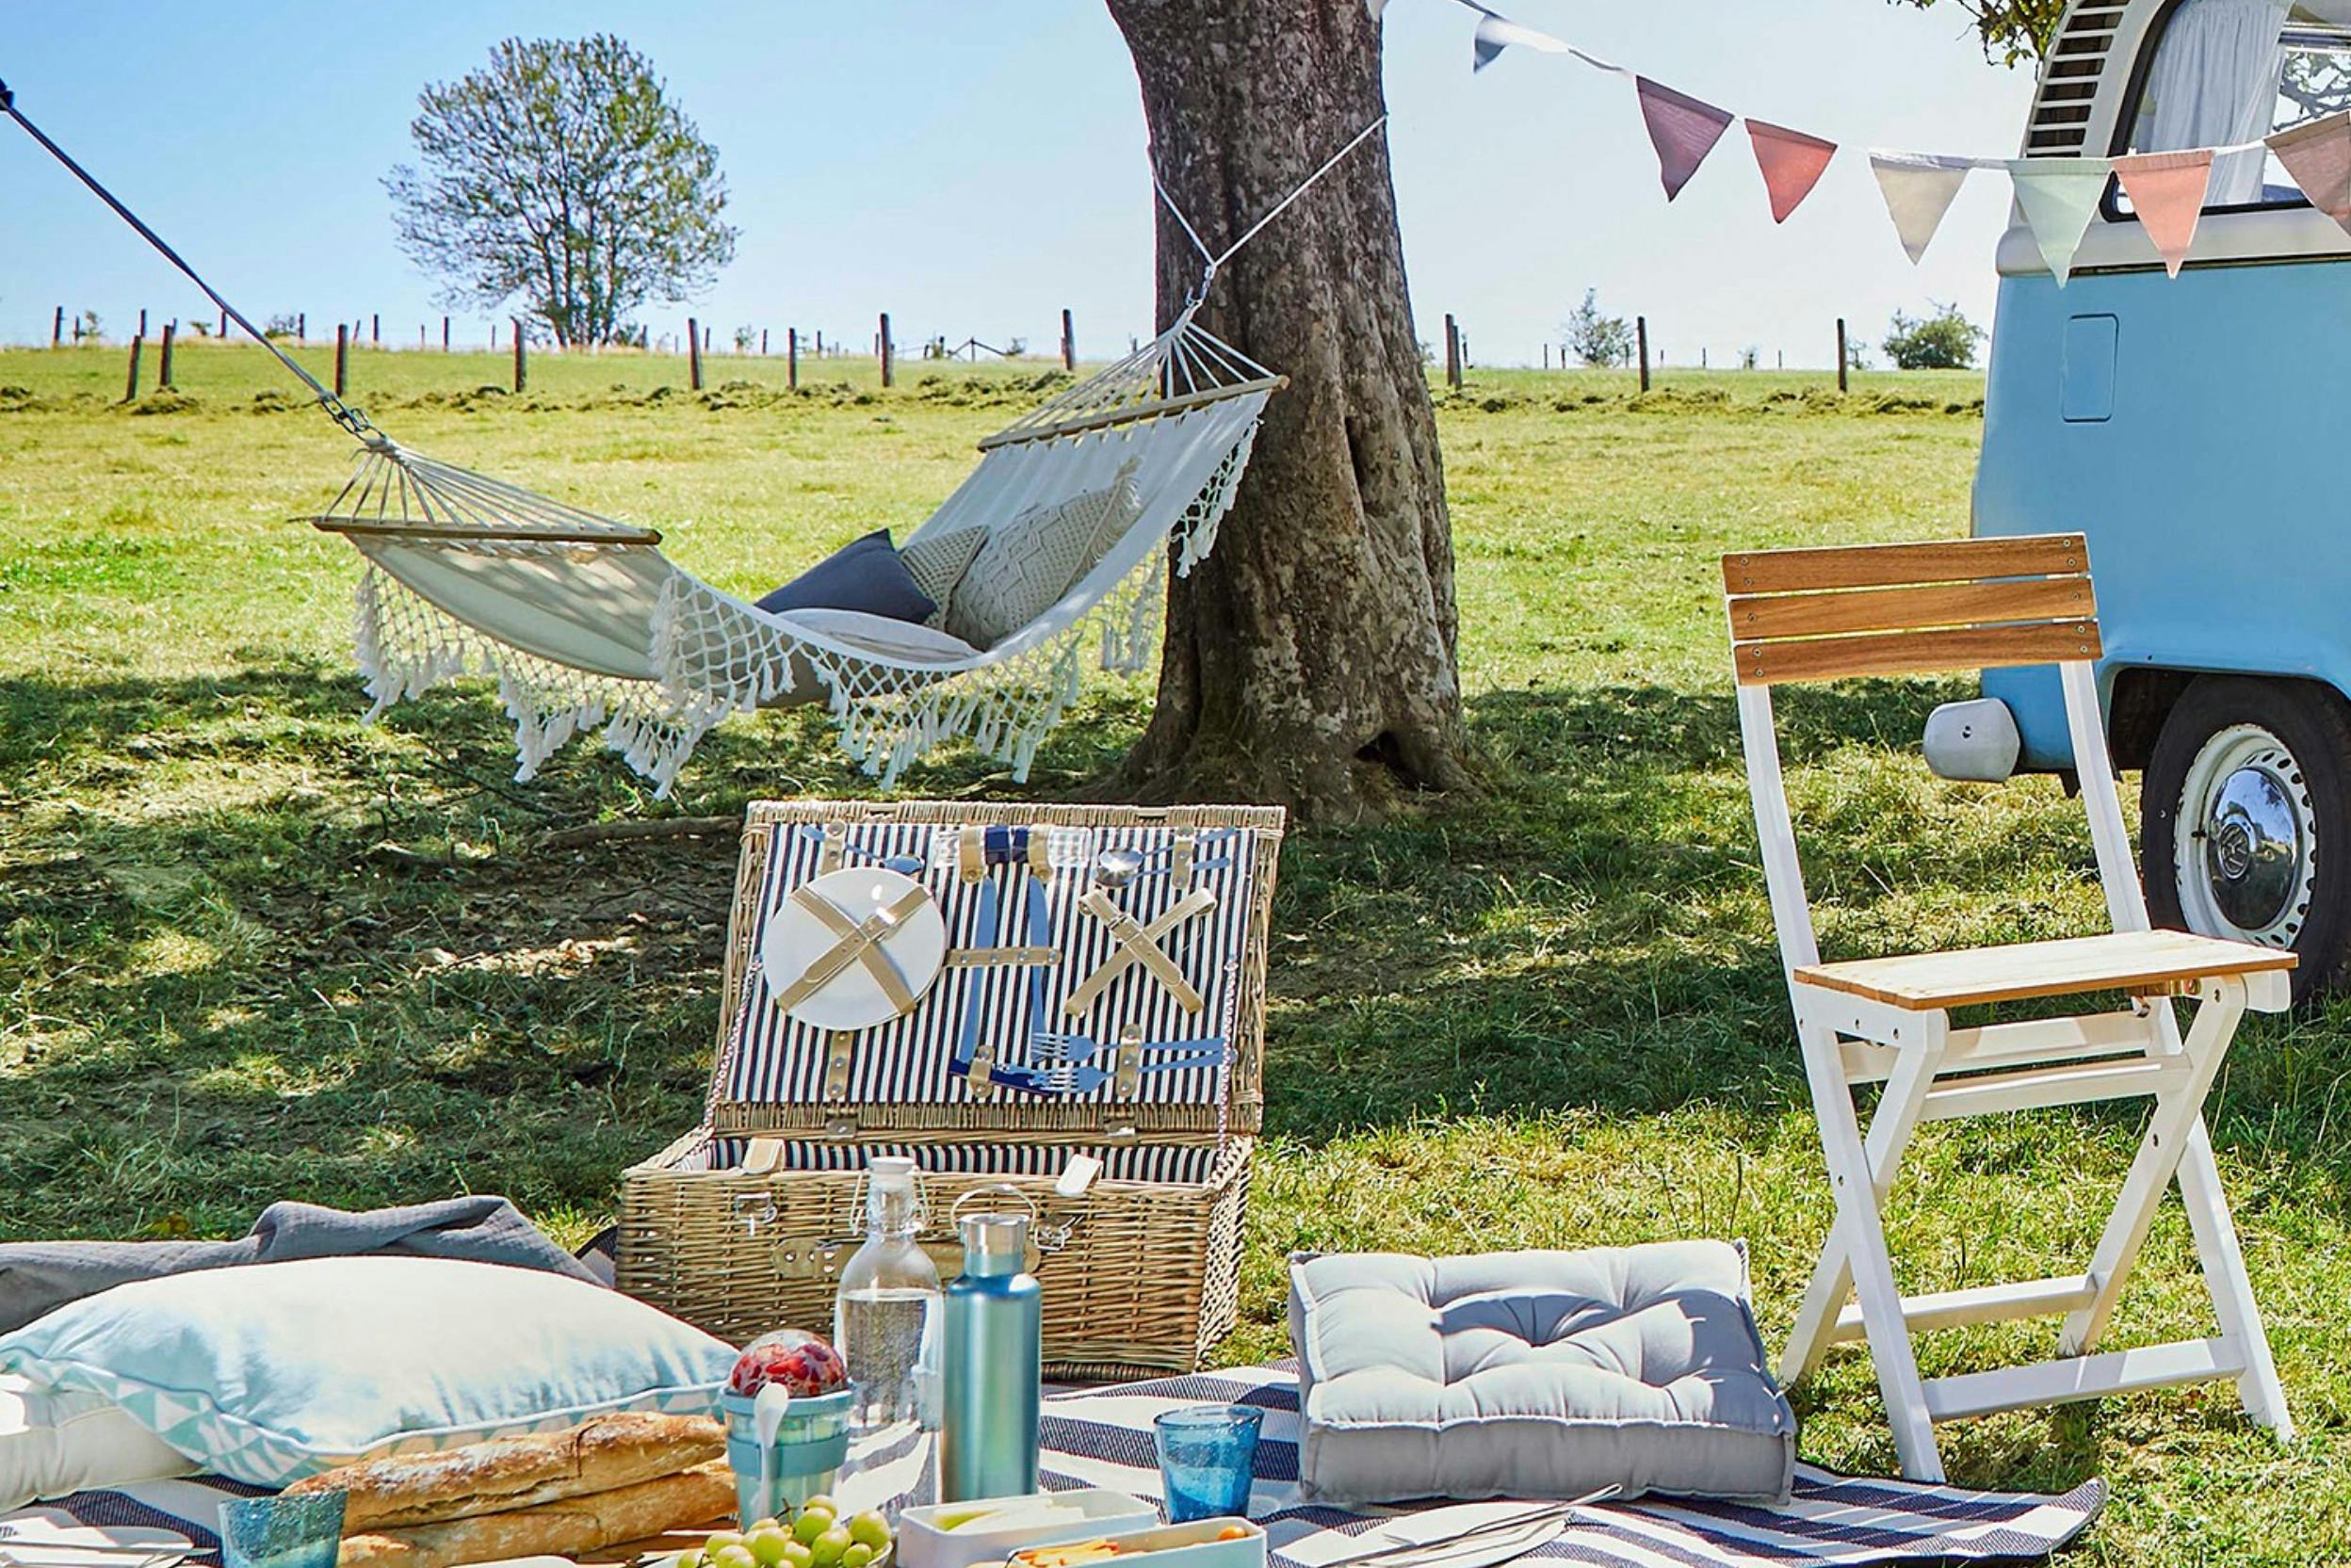 Idyllische Picknick-Setup mit Picknickkorb, Hängematte, Kissen und Wimpelkette